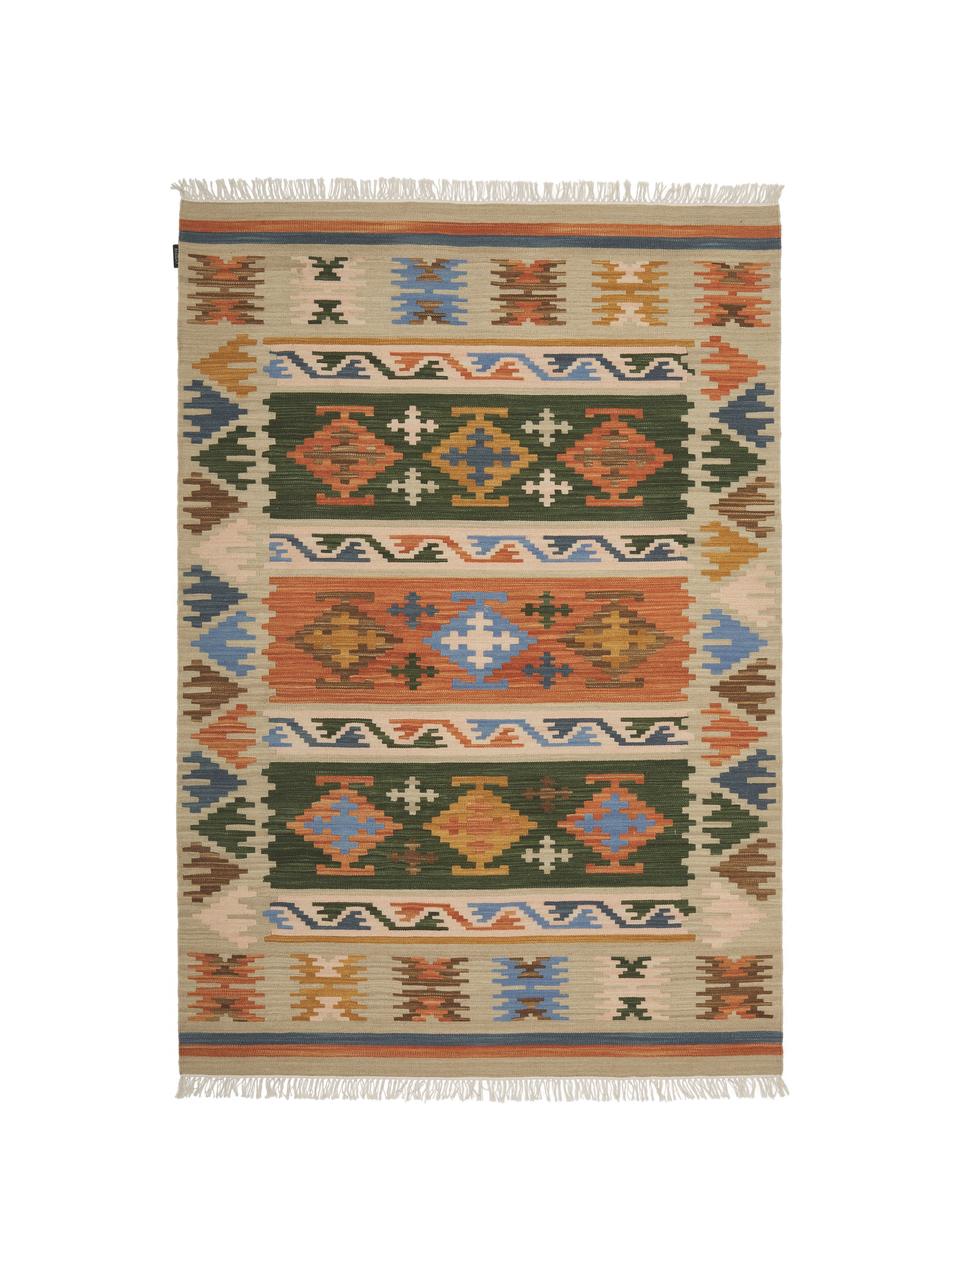 Ručně tkaný vlněný kilimový koberec s třásněmi Olon, Více barev